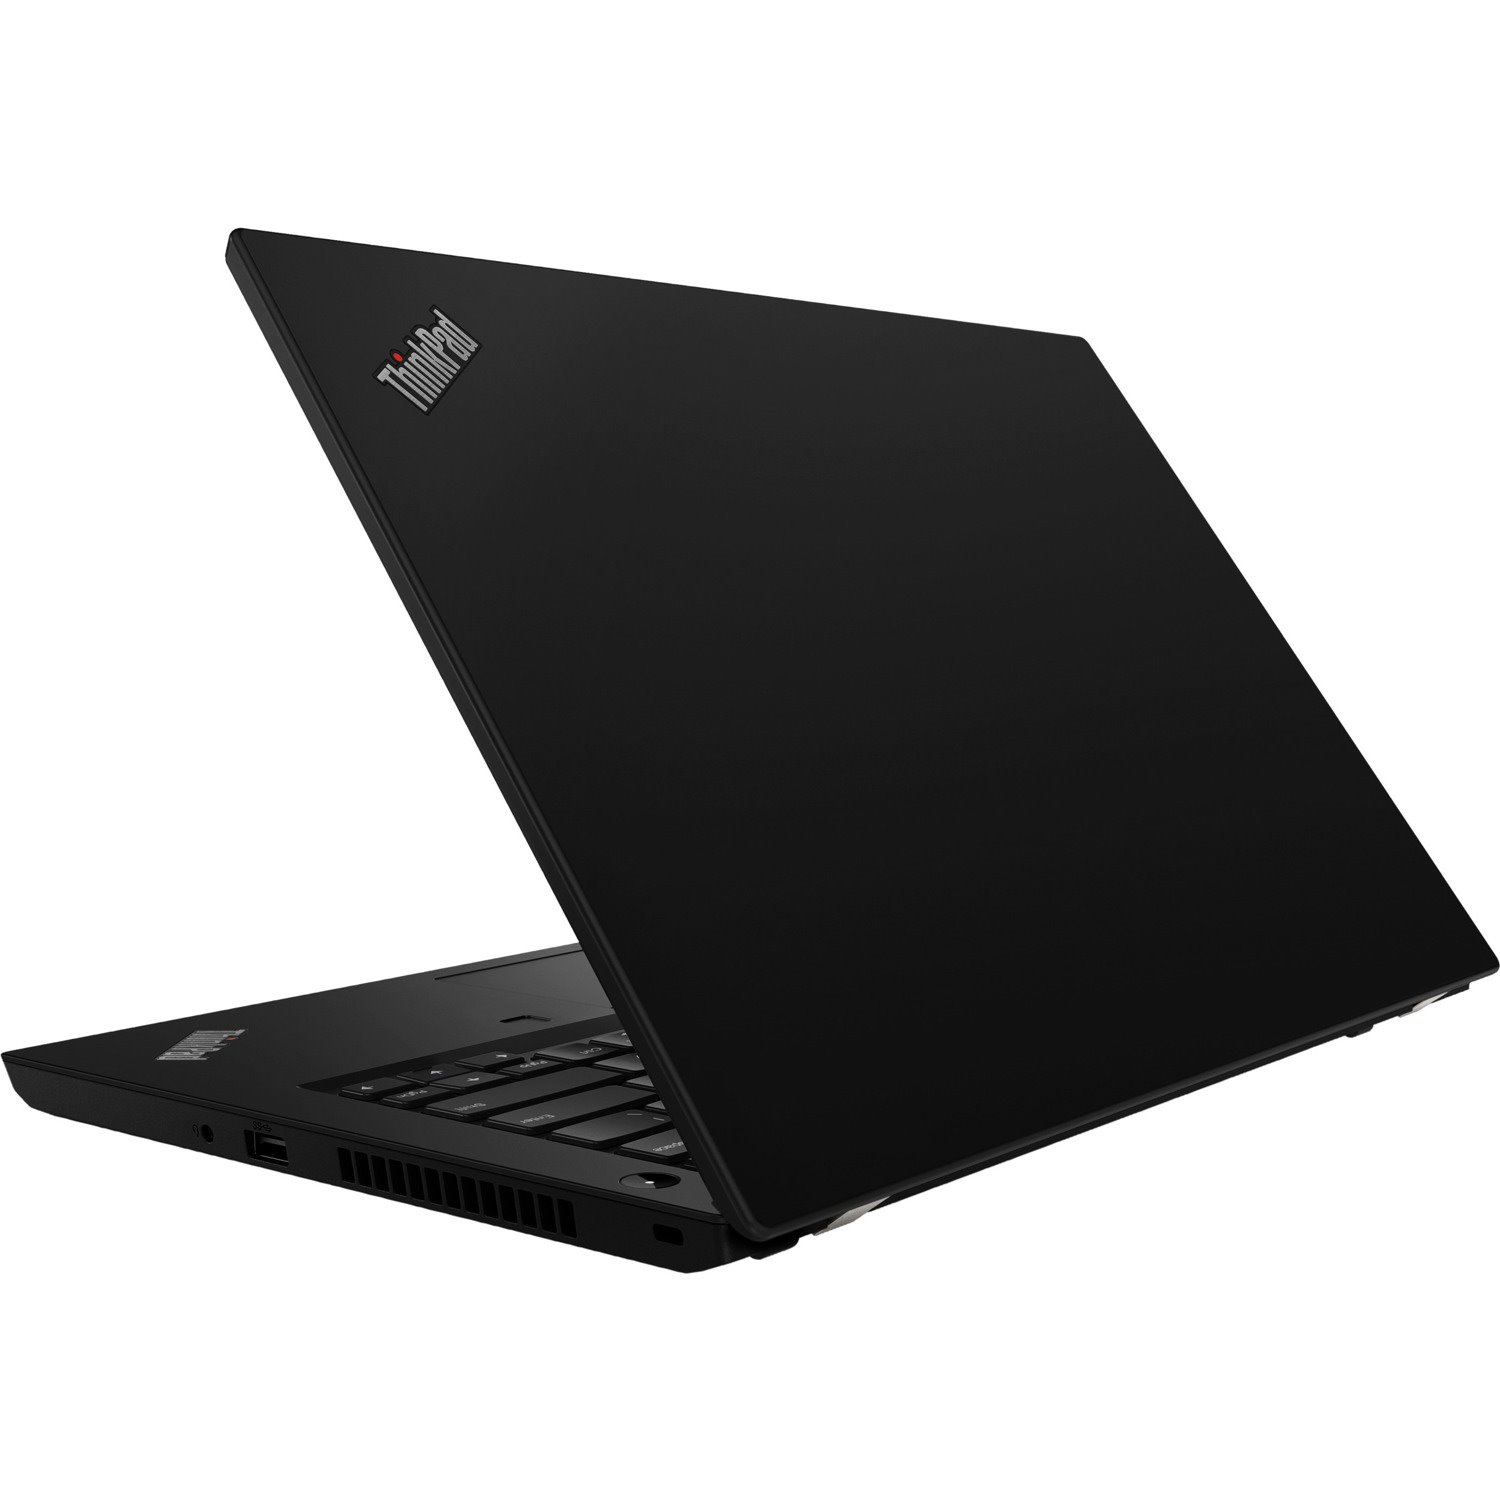 Lenovo ThinkPad L490 20Q5S01500 14" Notebook - 1920 x 1080 - Intel Core i7 8th Gen i7-8565U Quad-core (4 Core) 1.80 GHz - 16 GB Total RAM - 512 GB SSD